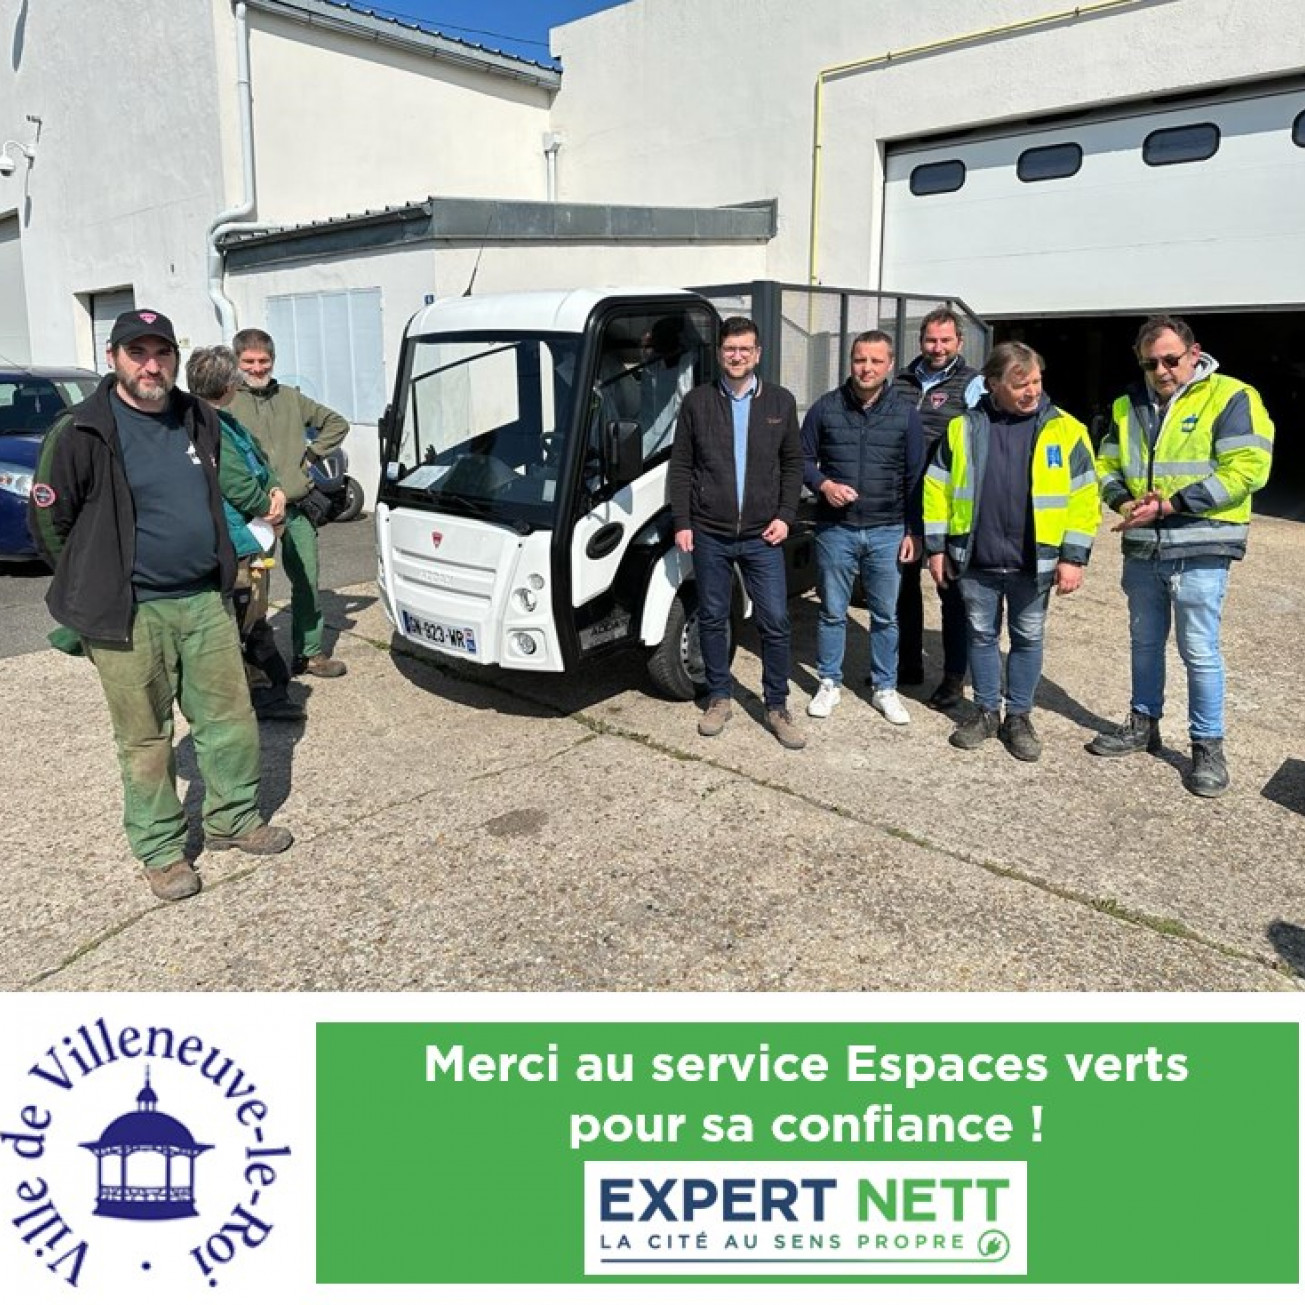 Expert Nett équipe le service Espaces Verts de la ville de Villeneuve-le-Roi !